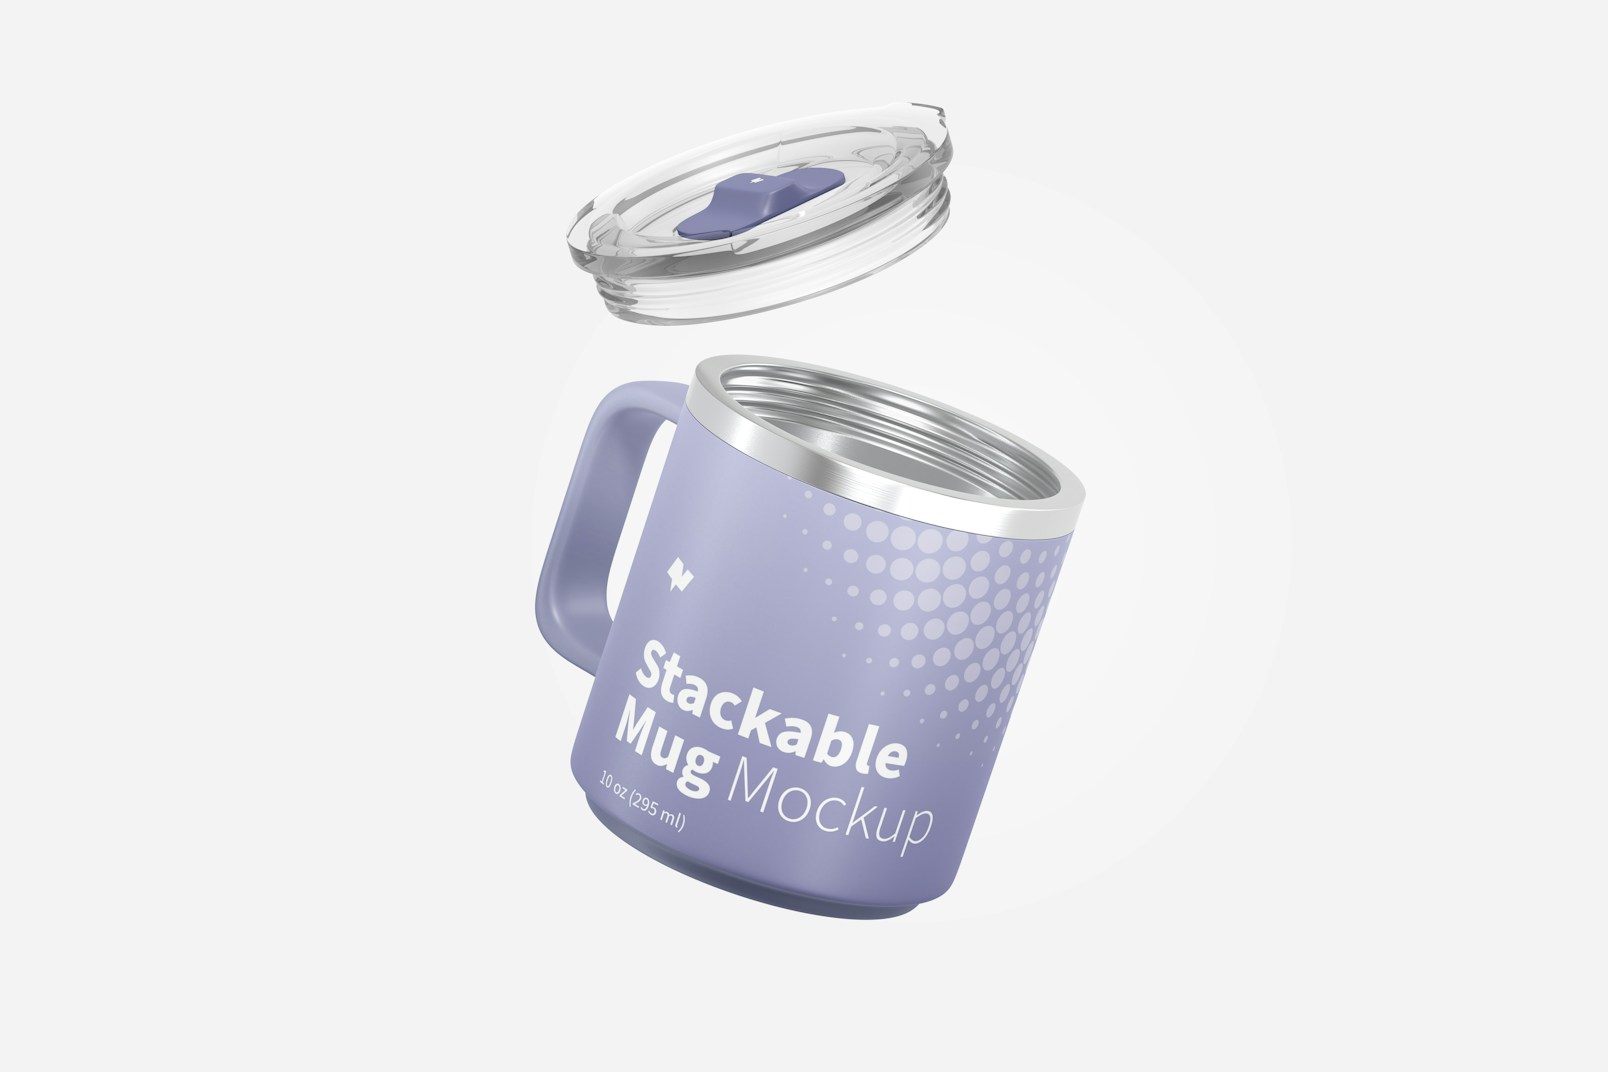 10 oz Stackable Mug Mockup, Floating